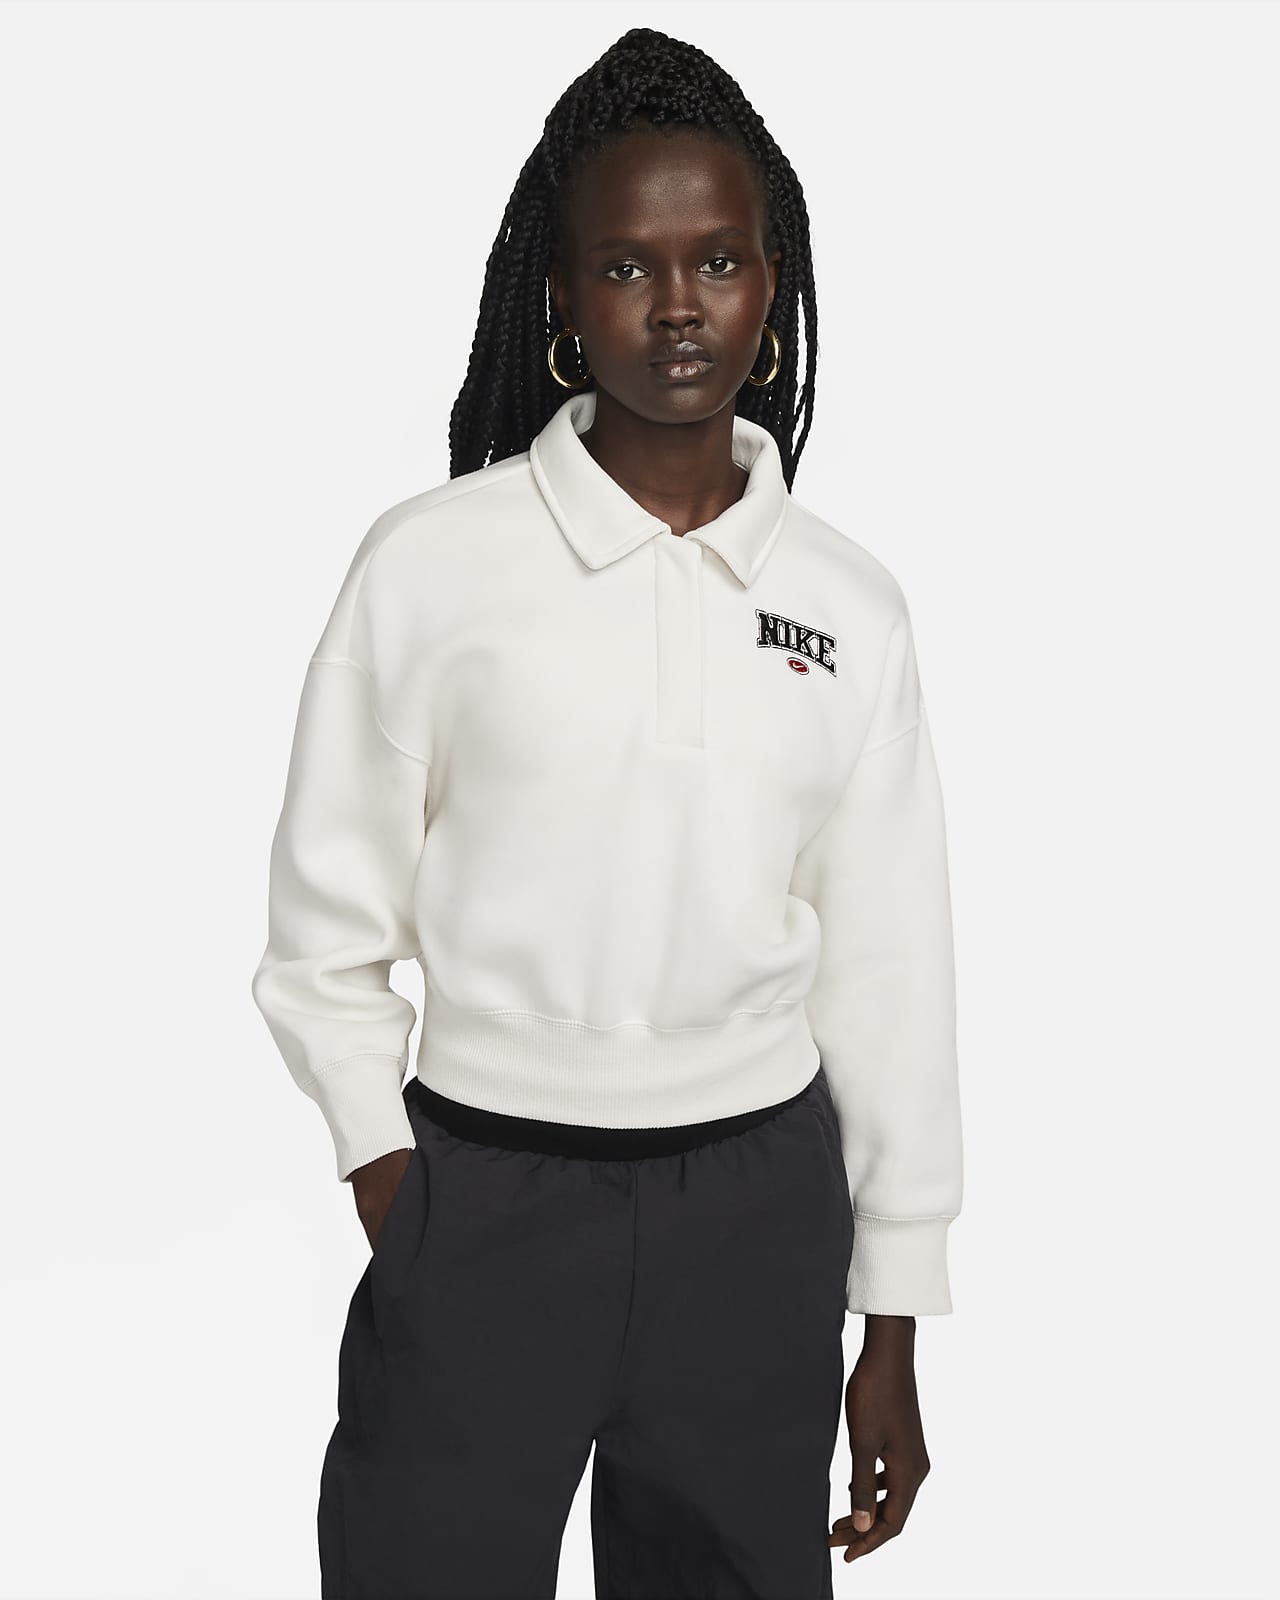 Nike Sportswear Phoenix Fleece Women's 3/4-Sleeve Crop Polo Sweatshirt